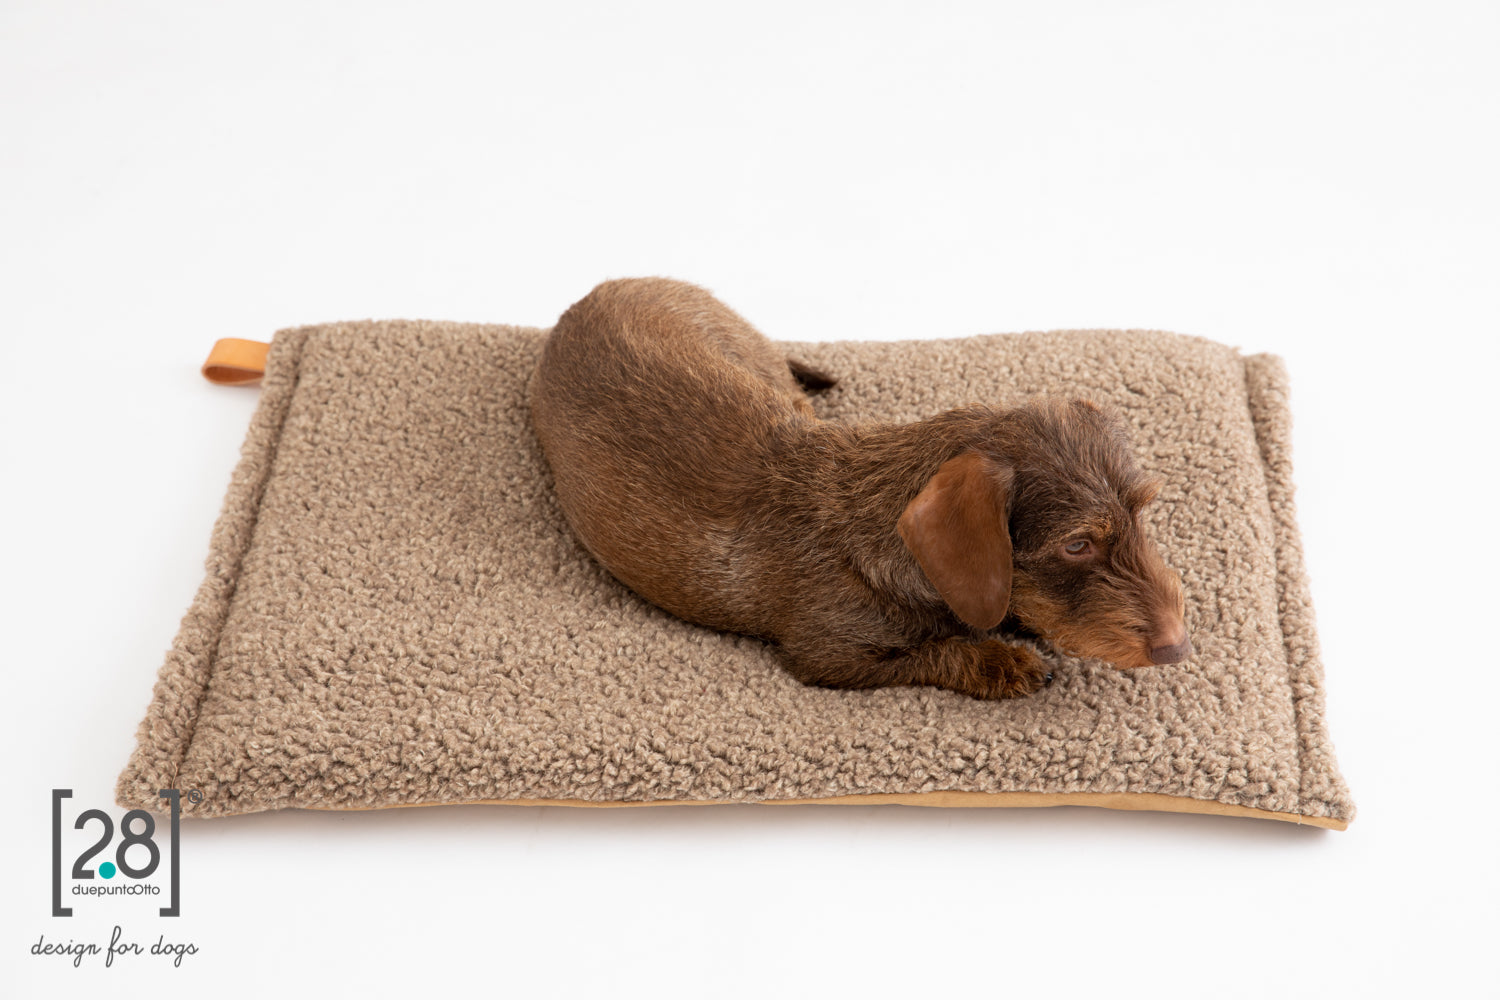 2.8 duepuntootto Richard Slim Wool Dog Cushion Havana schmales weiches Hundekissen